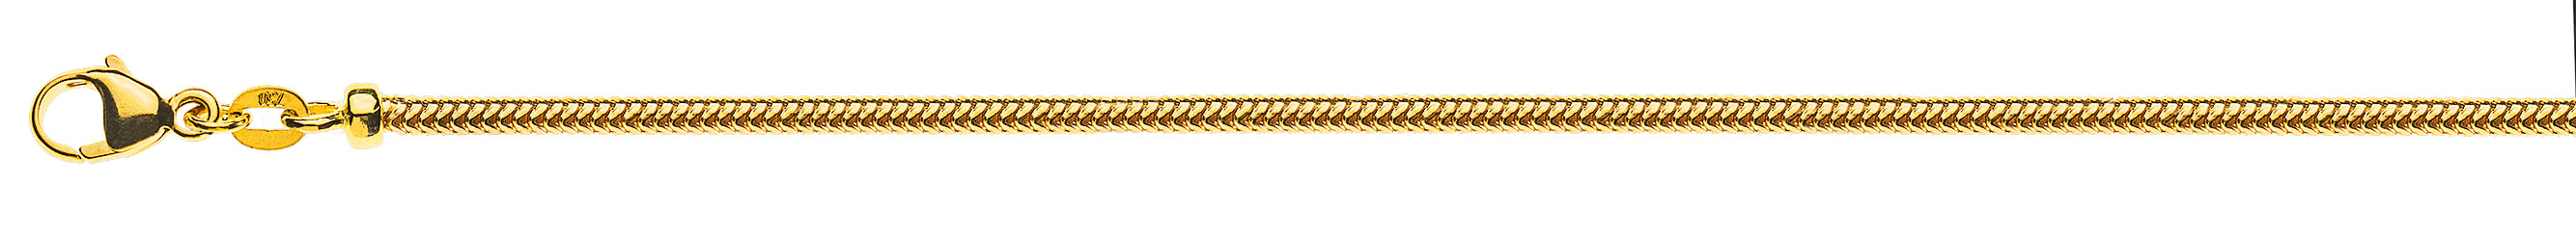 AURONOS Prestige Halskette Gelbgold 18K Schlangenkette 45cm 2.4mm